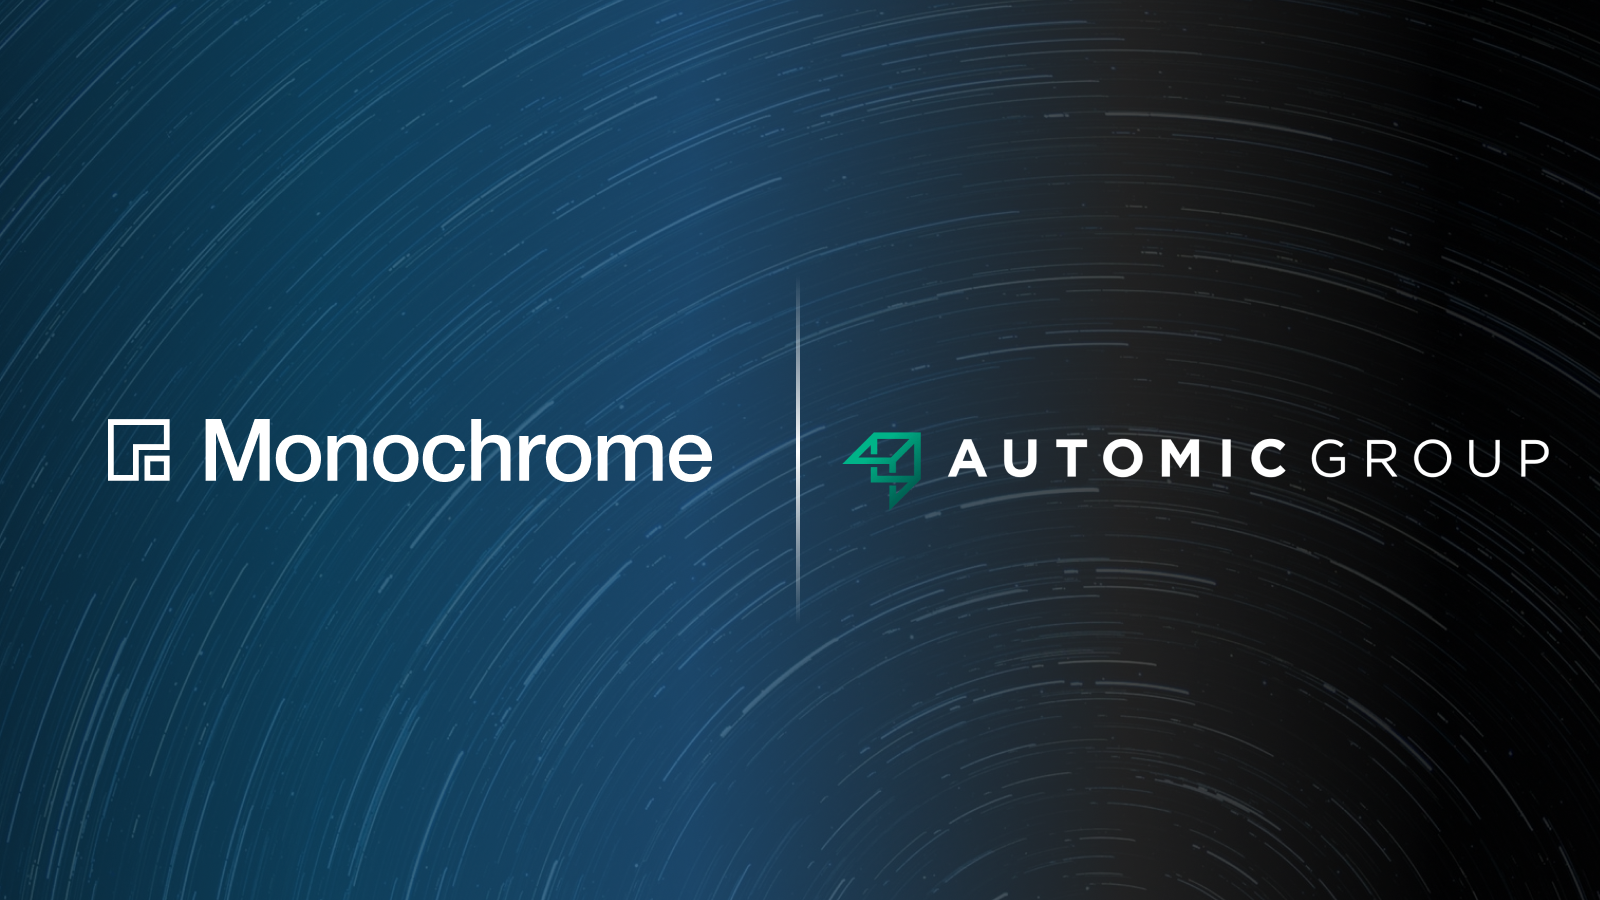 Monochrome Asset Management_Automic Group_1600x900.png